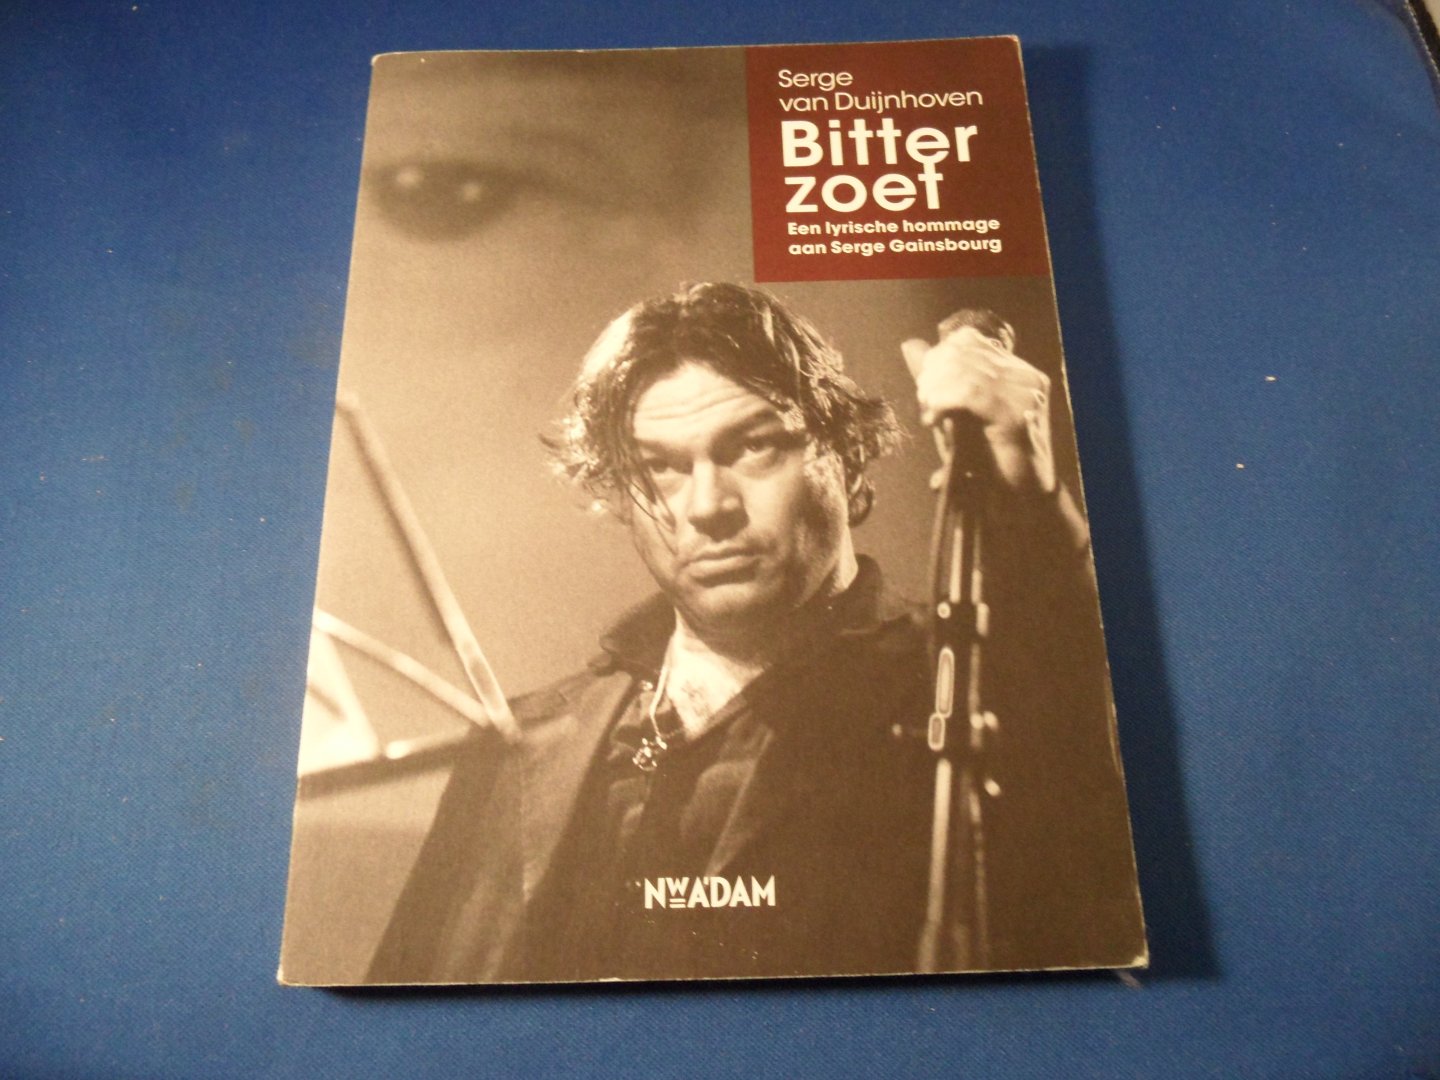 Duijnhoven, Serge van - Bitterzoet. Een lyrische hommage aan Serge Gainsbourg